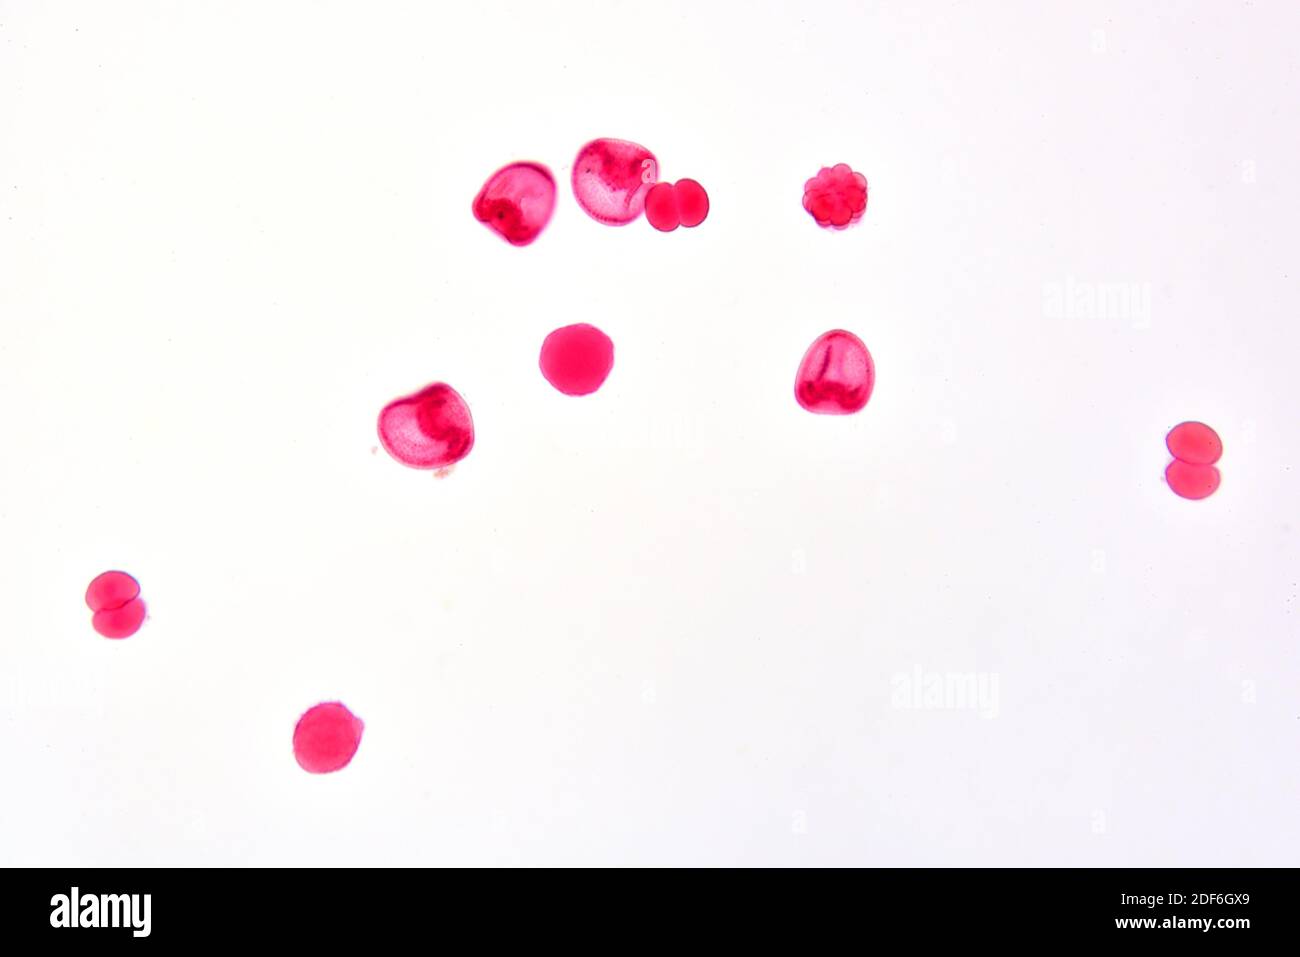 Ricci di mare, blastula, gastrula e morula. Microscopio ottico X100 Foto  stock - Alamy